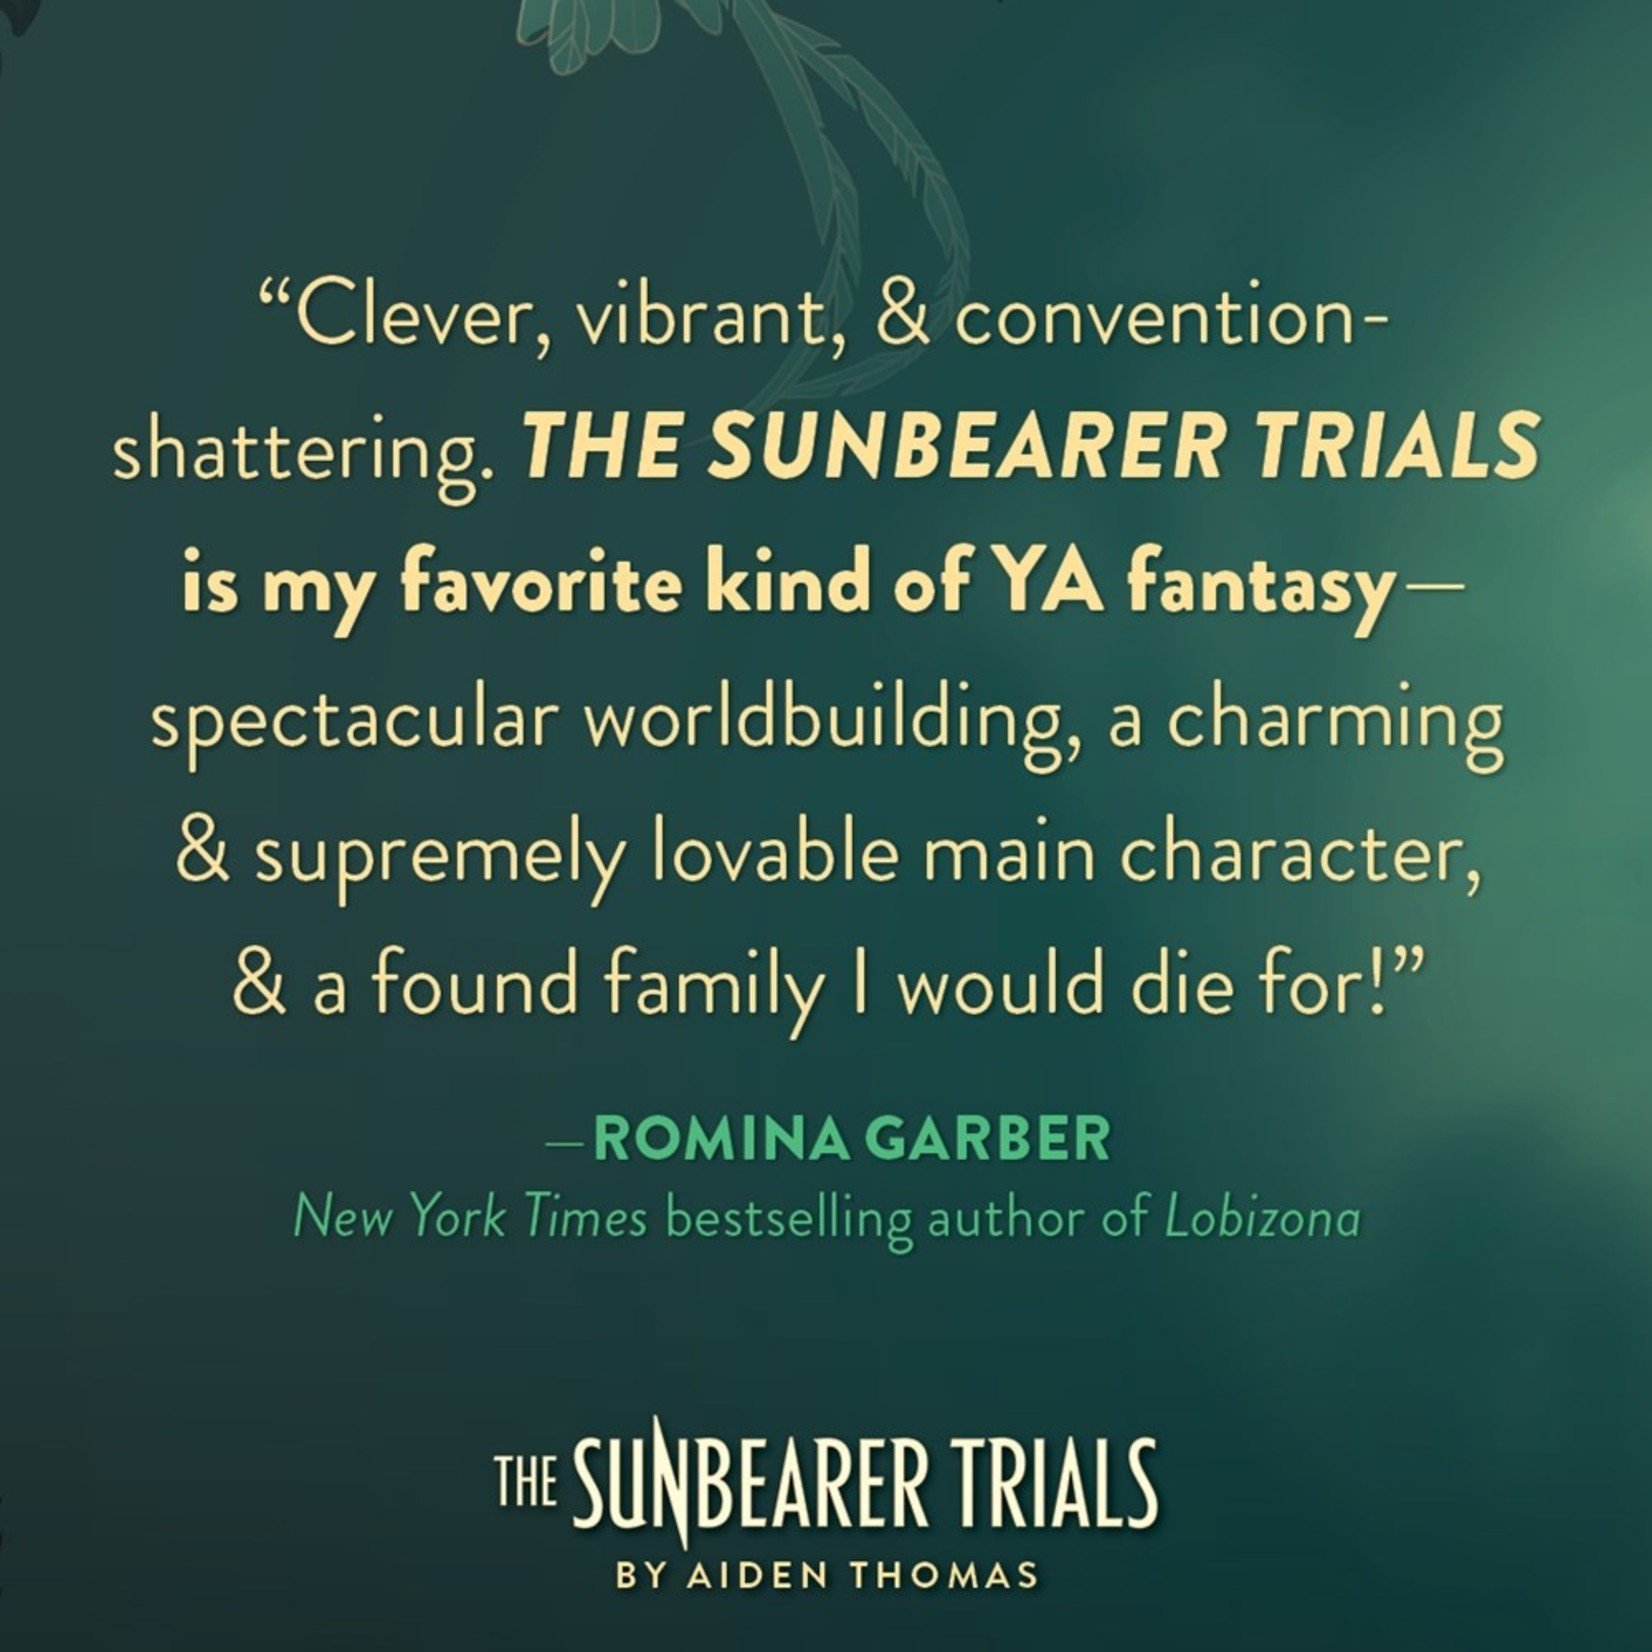 The Sunbearer Trials (Sunbearer Duology #1)